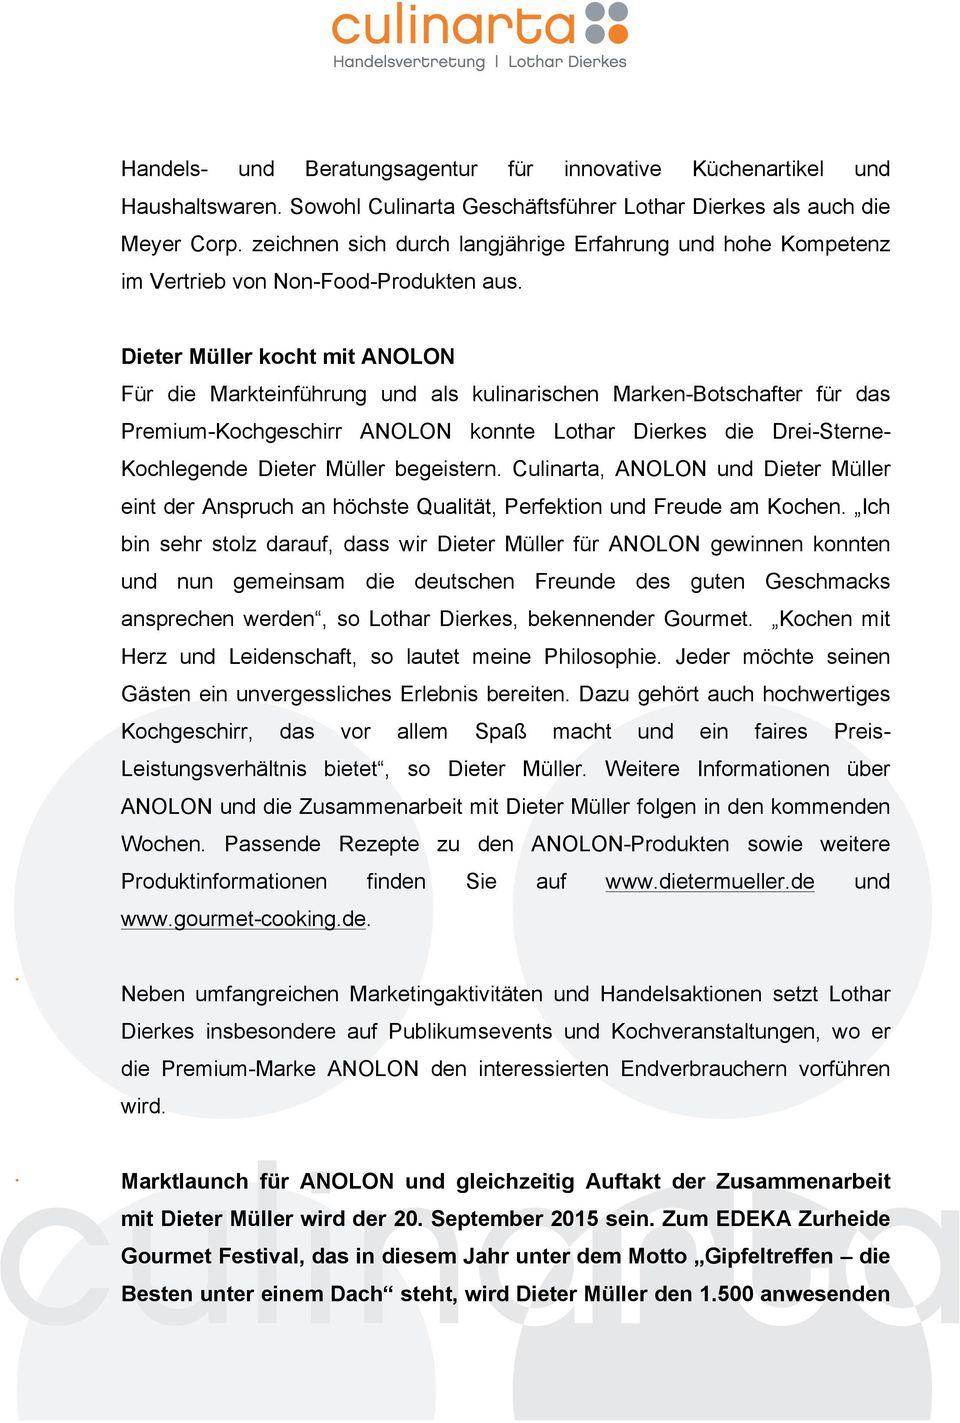 Dieter Müller kocht mit ANOLON Für die Markteinführung und als kulinarischen Marken-Botschafter für das Premium-Kochgeschirr ANOLON konnte Lothar Dierkes die Drei-Sterne- Kochlegende Dieter Müller